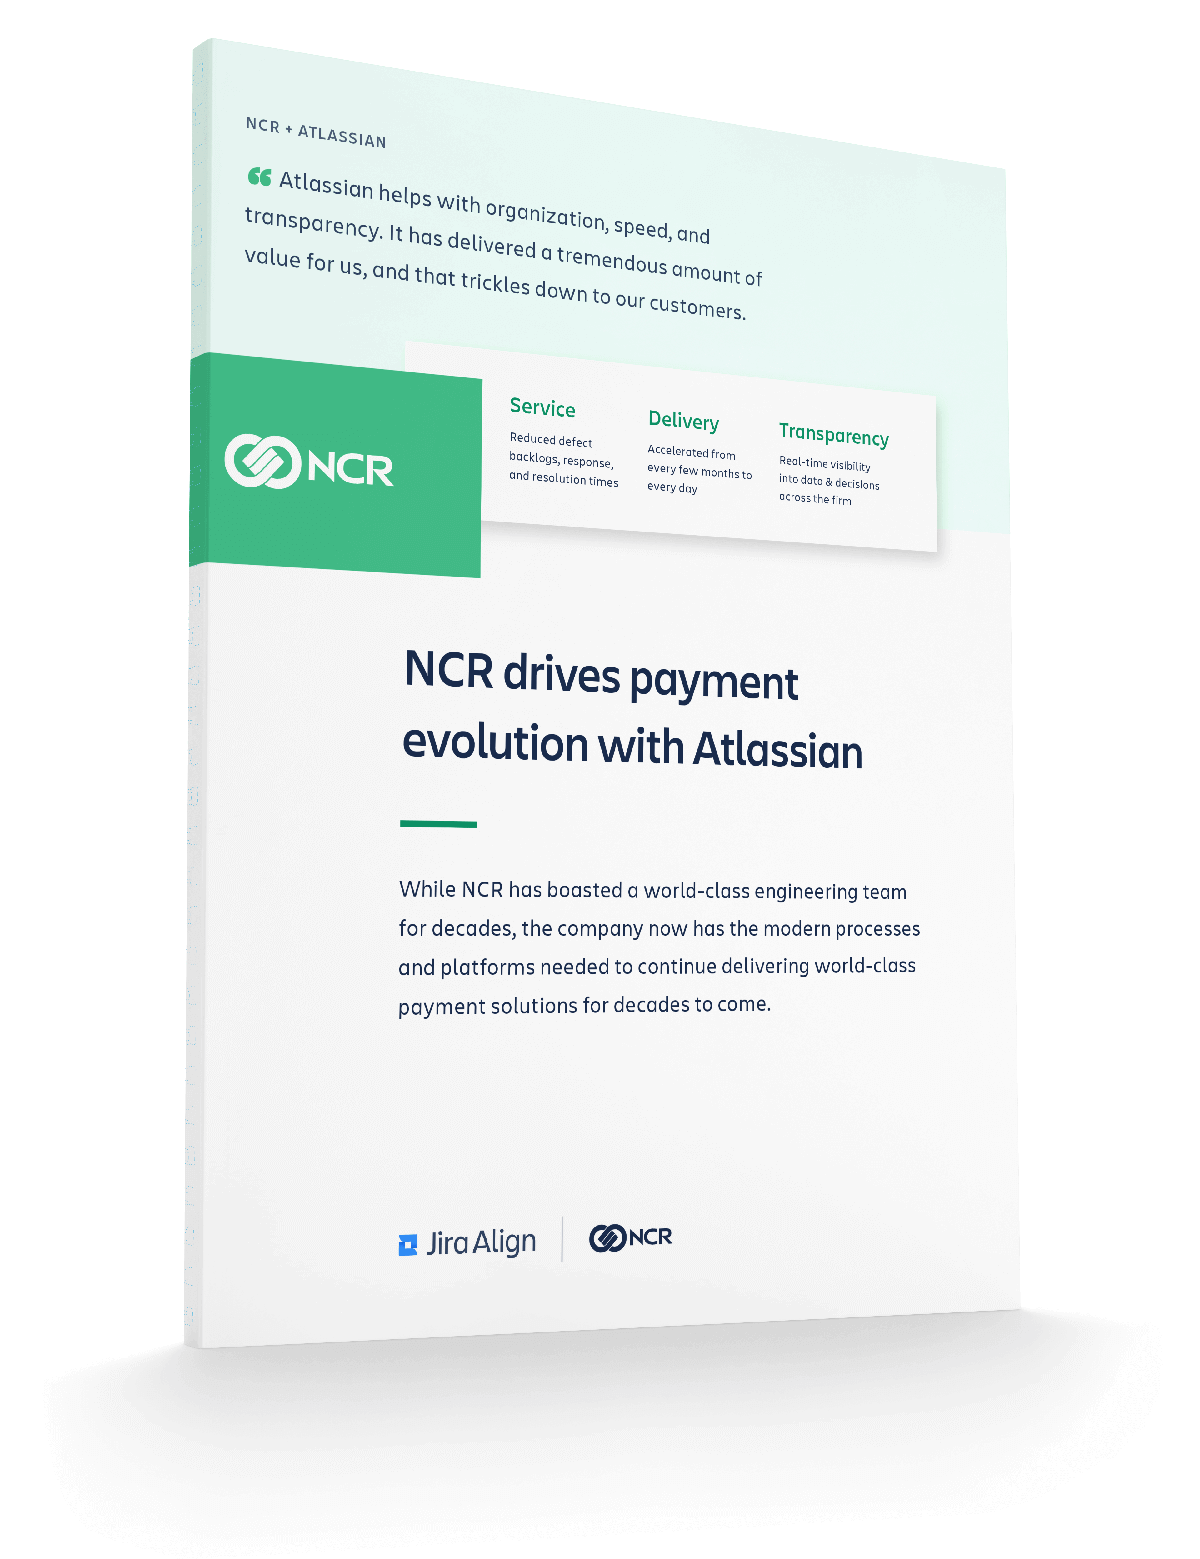 Vorschau des PDF-Dokuments "Praktiken zur Skalierung agiler Methoden und ein integriertes Toolset von Atlassian erleichtern NCR die Entwicklung innovativer Zahlungssysteme"